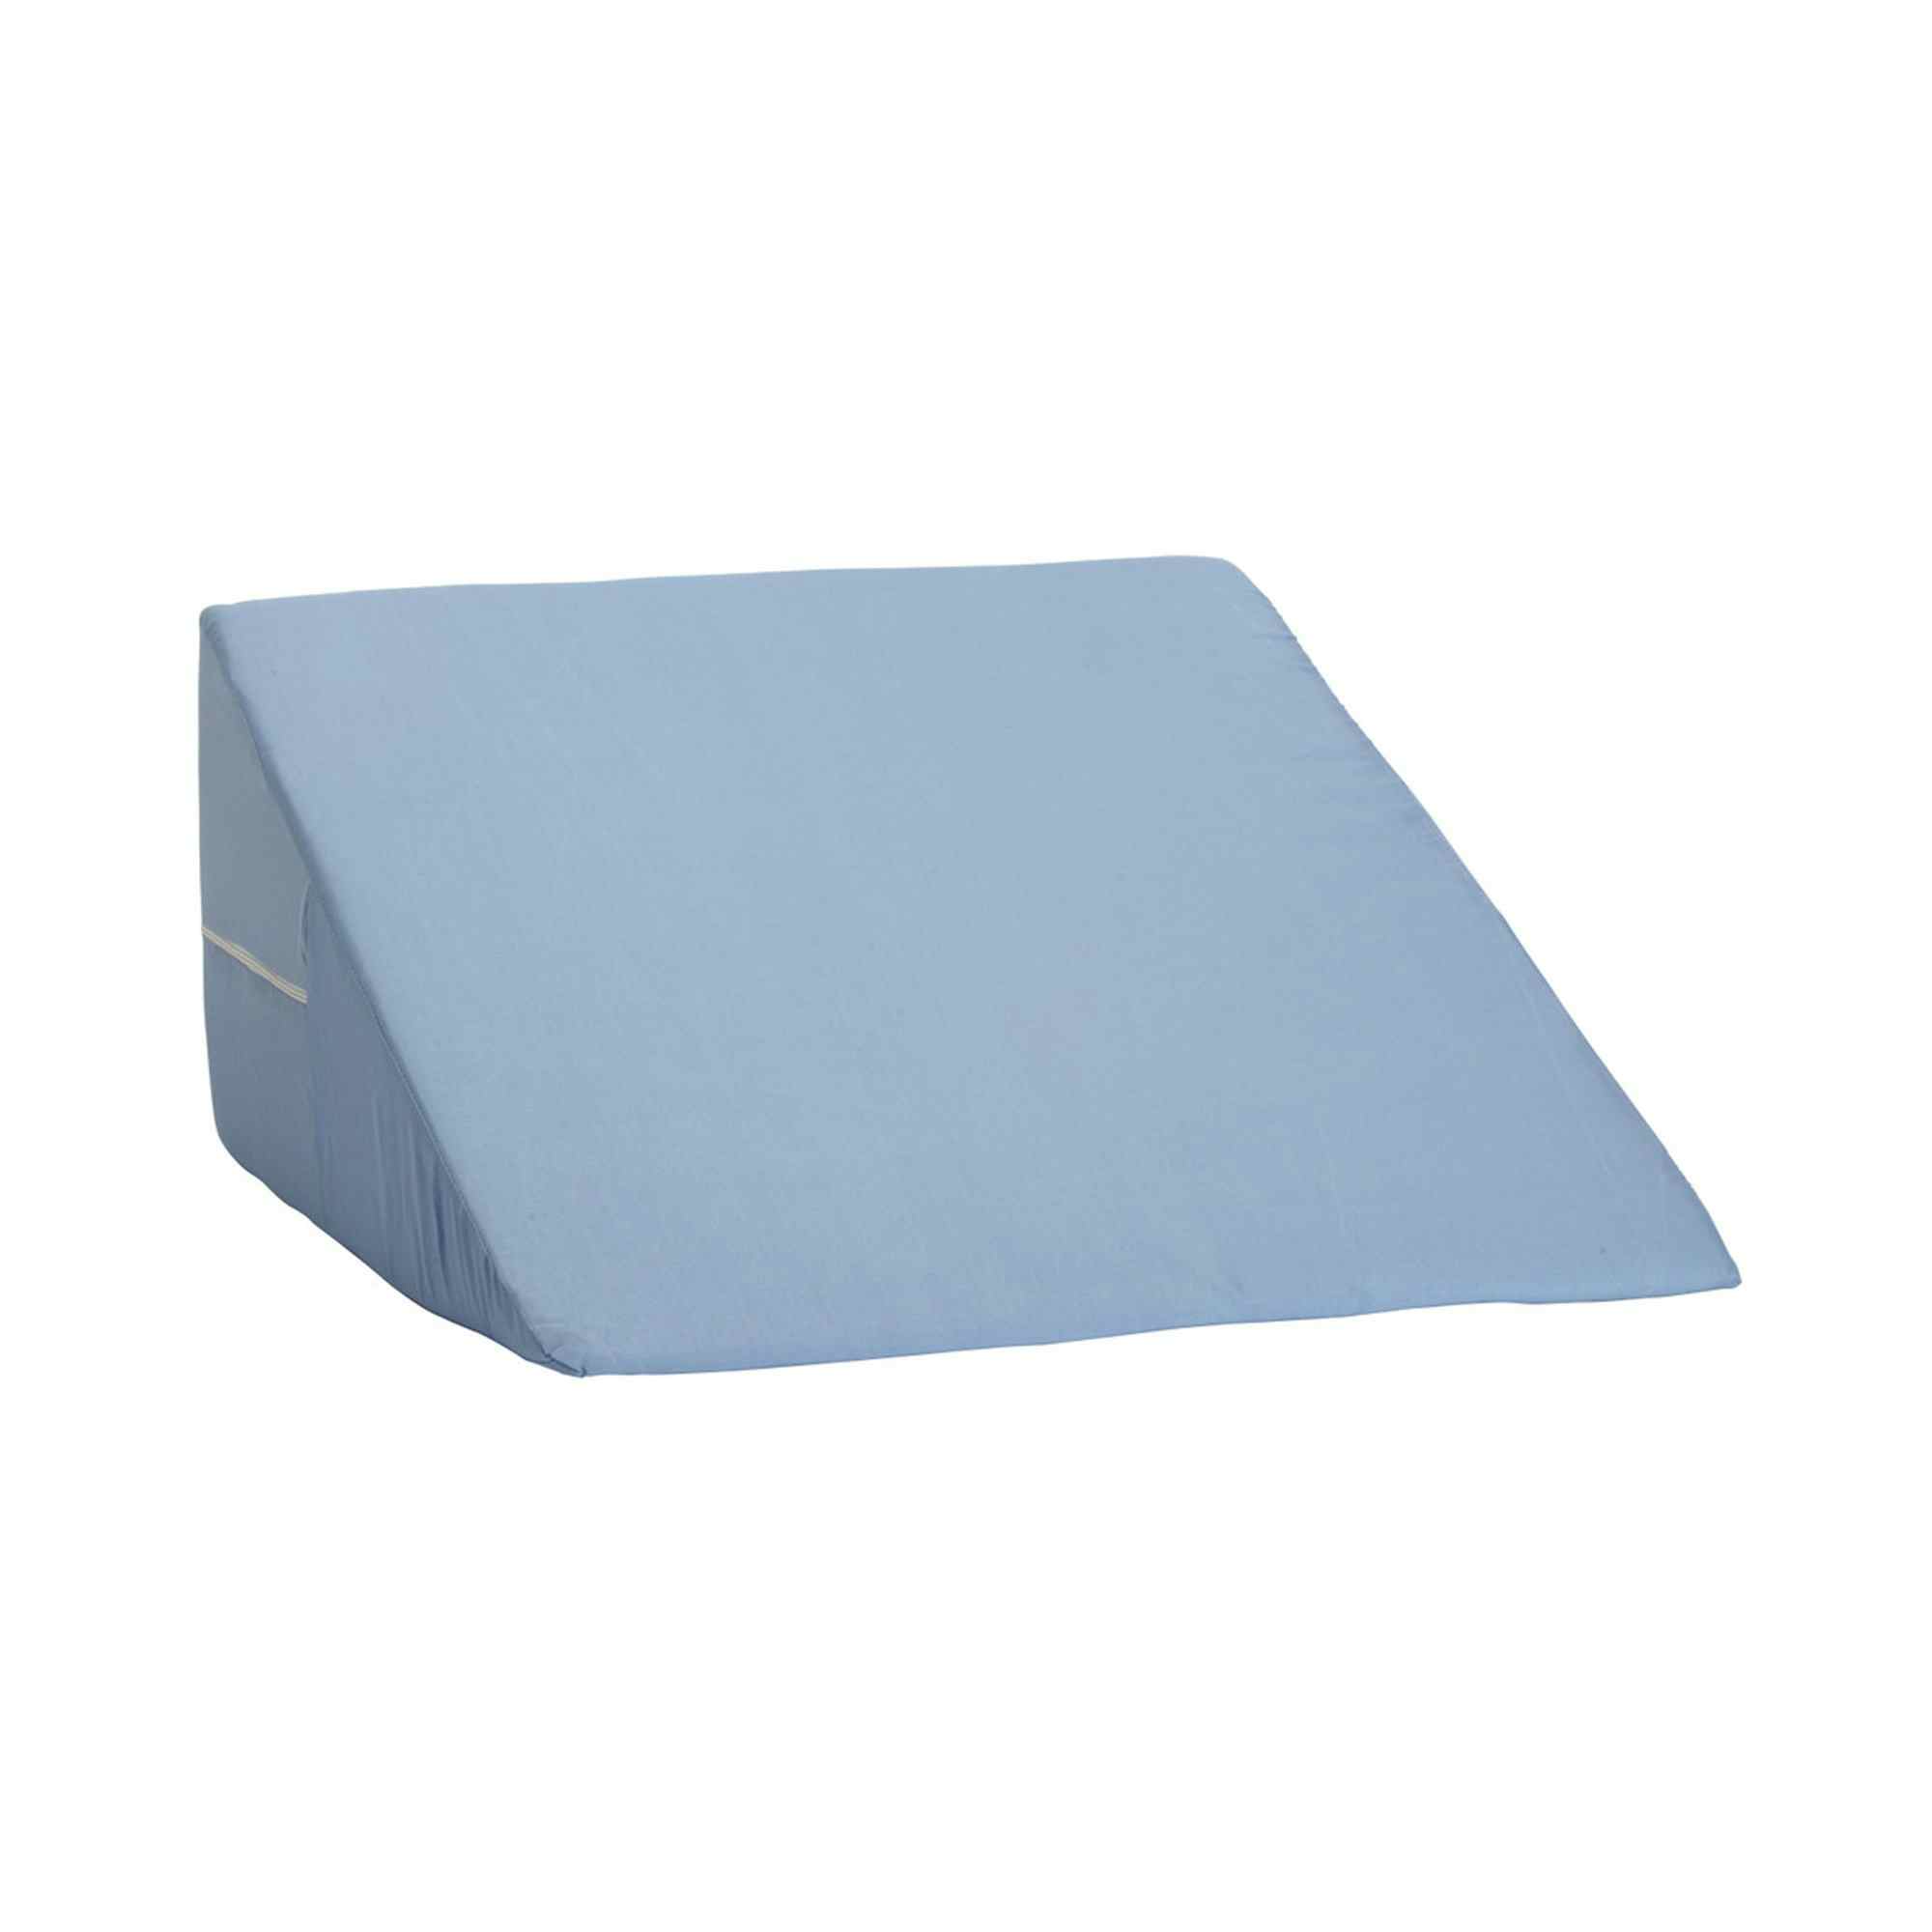 DMI Foam Freestanding Positioning Wedge, 802-8027-0100, Blue 24 in x 24 in x 10 in - 1 Each